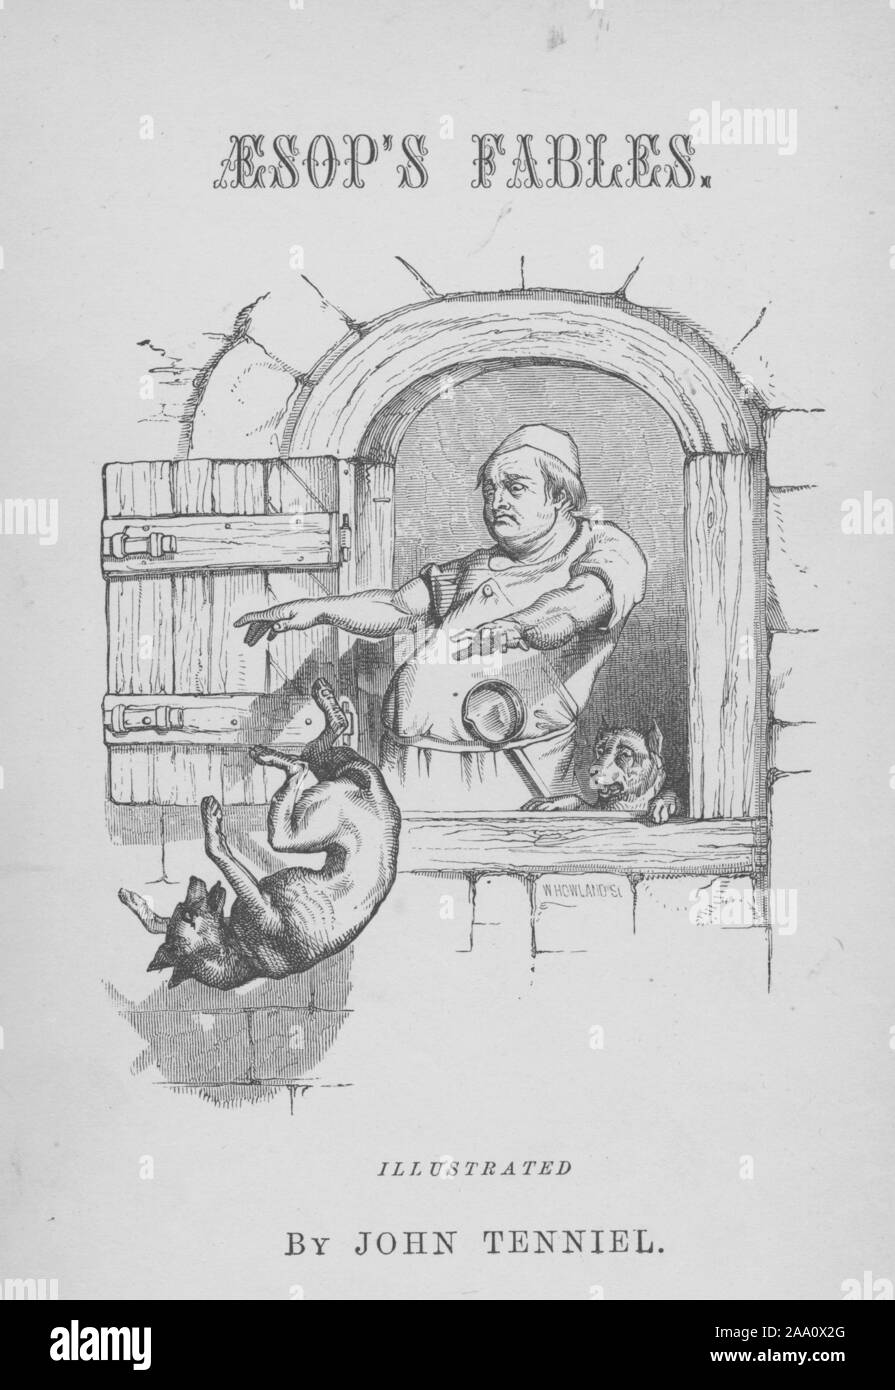 Monochrome Abbildung der Titelseite des Buches "aesops Fabeln" durch Thema Reverend Thomas James, mit einem Koch werfen einen Hund aus dem Fenster, von John Tenniel, von William Howland, von Collins und Bruder, 1848 erschienen graviert dargestellt. Von der New York Public Library. () Stockfoto